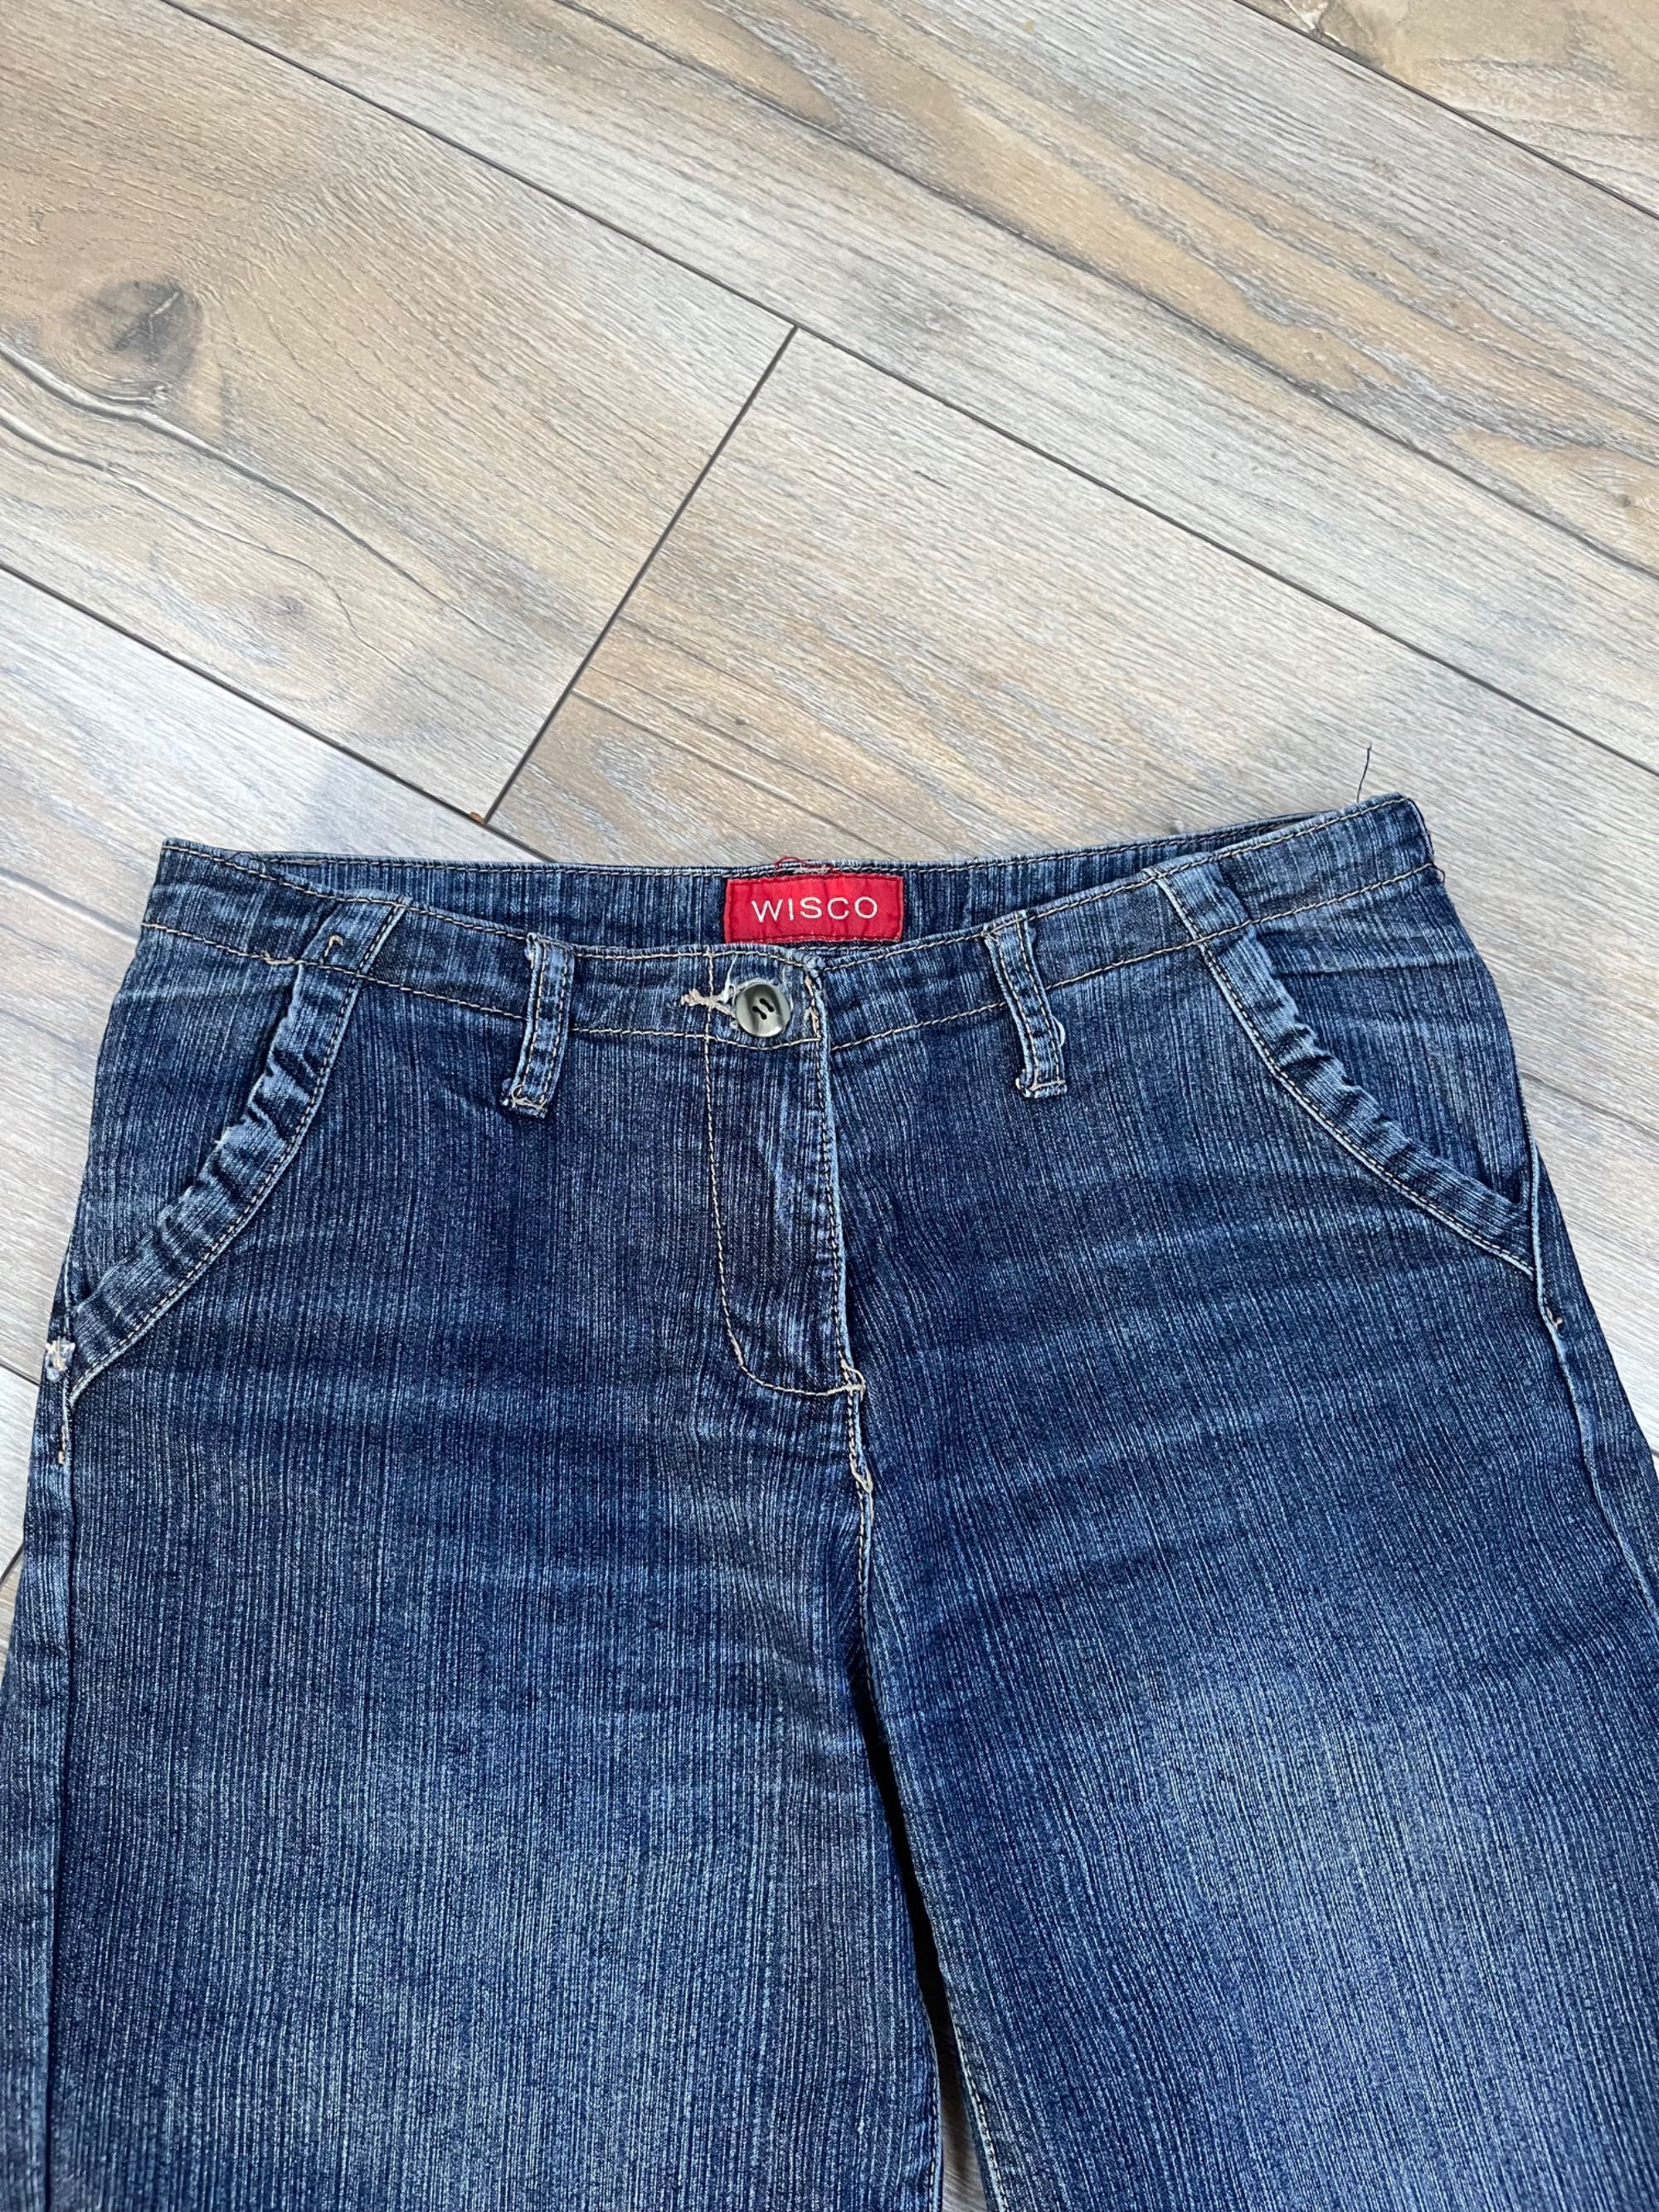 spodnie jeansowe S z szerokimi nogawkami